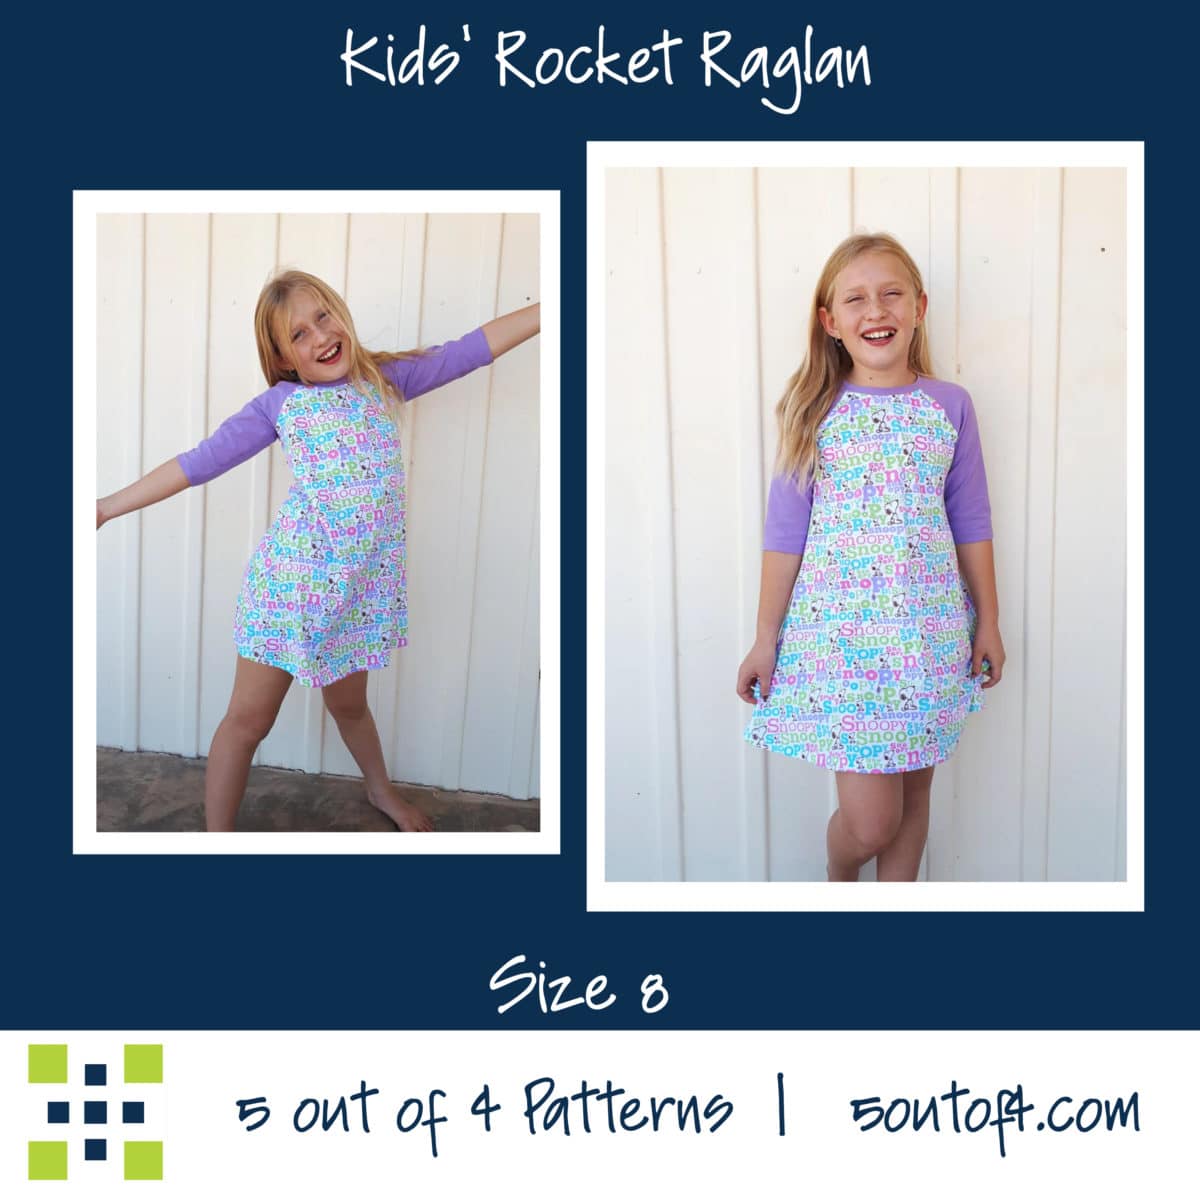 Kids' Rocket Raglan - 5 out of 4 Patterns